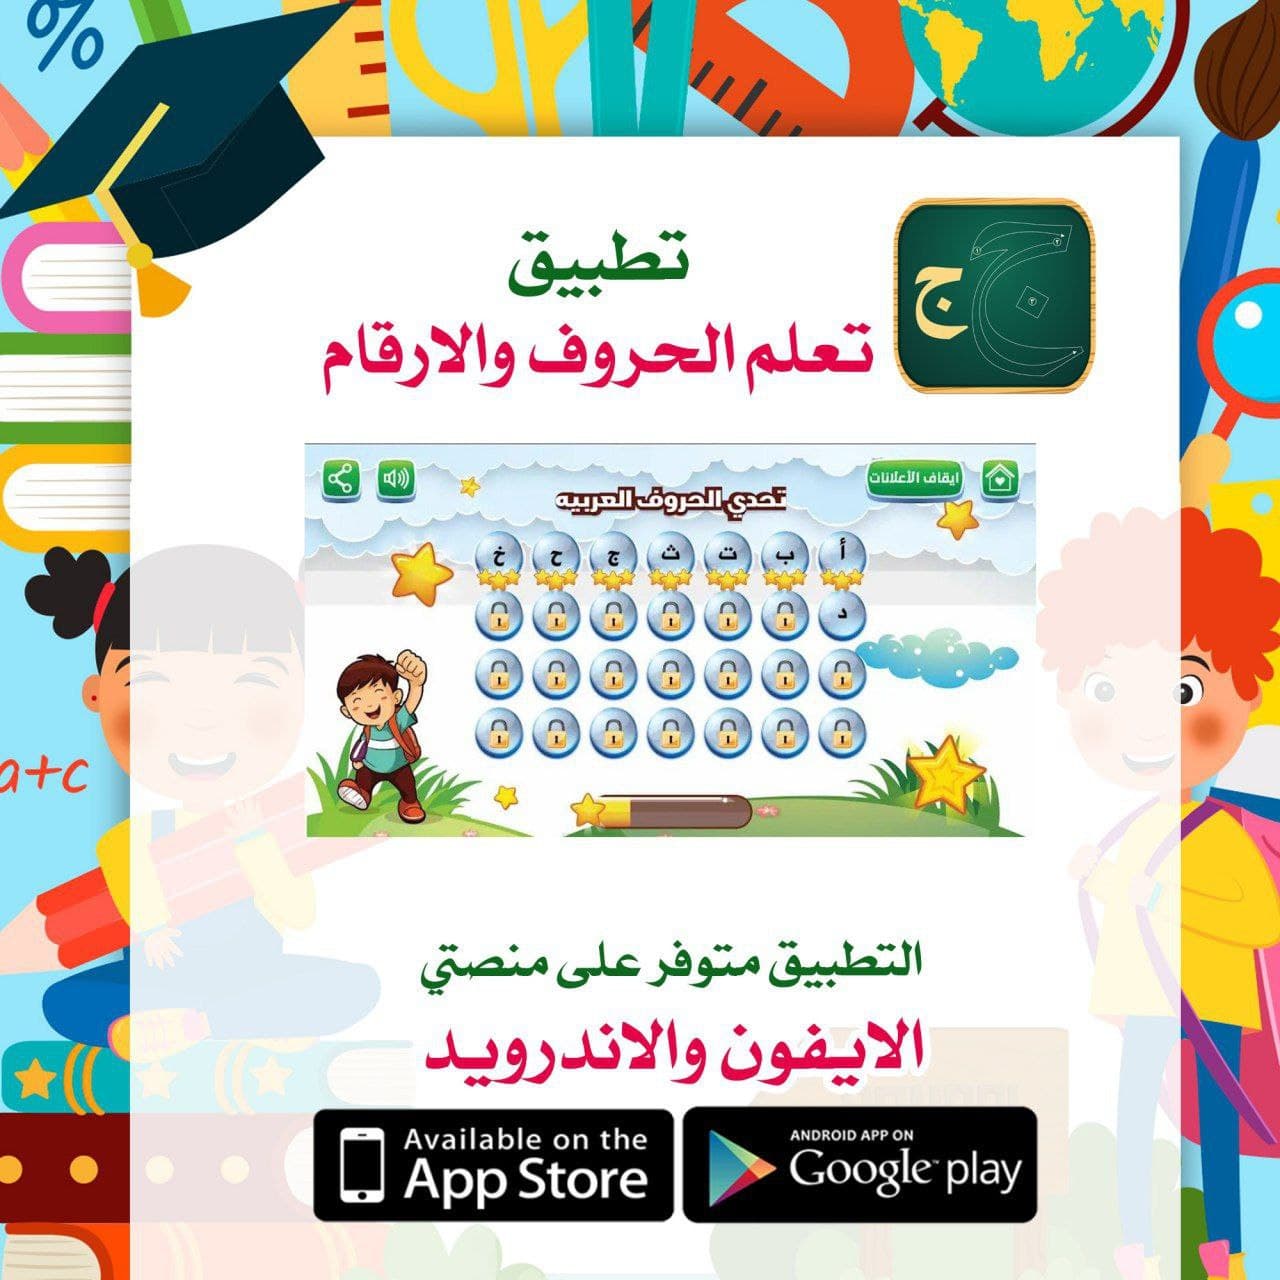 تطبيق يساعد في تعلم الأطفال كتابة الحروف والأرقام الانجليزية والعربية بشكل صحيح